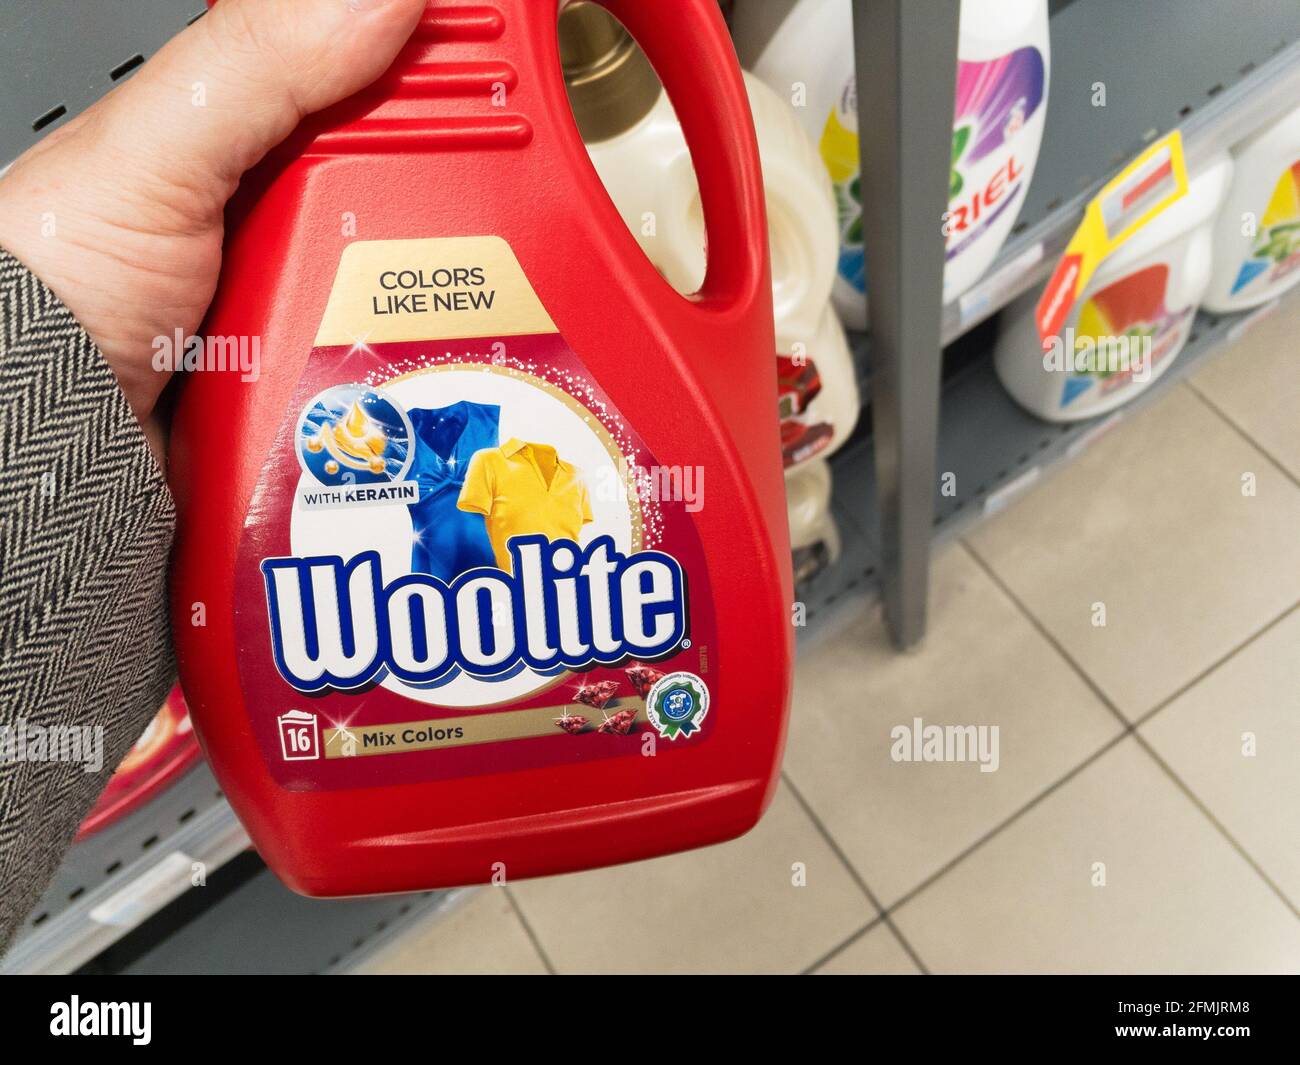 Immagine di una bottiglia detergente con il logo di Reckitt a belgarde, serbia. Woolite è un marchio americano di detersivo per bucato di proprietà del mul britannico Foto Stock